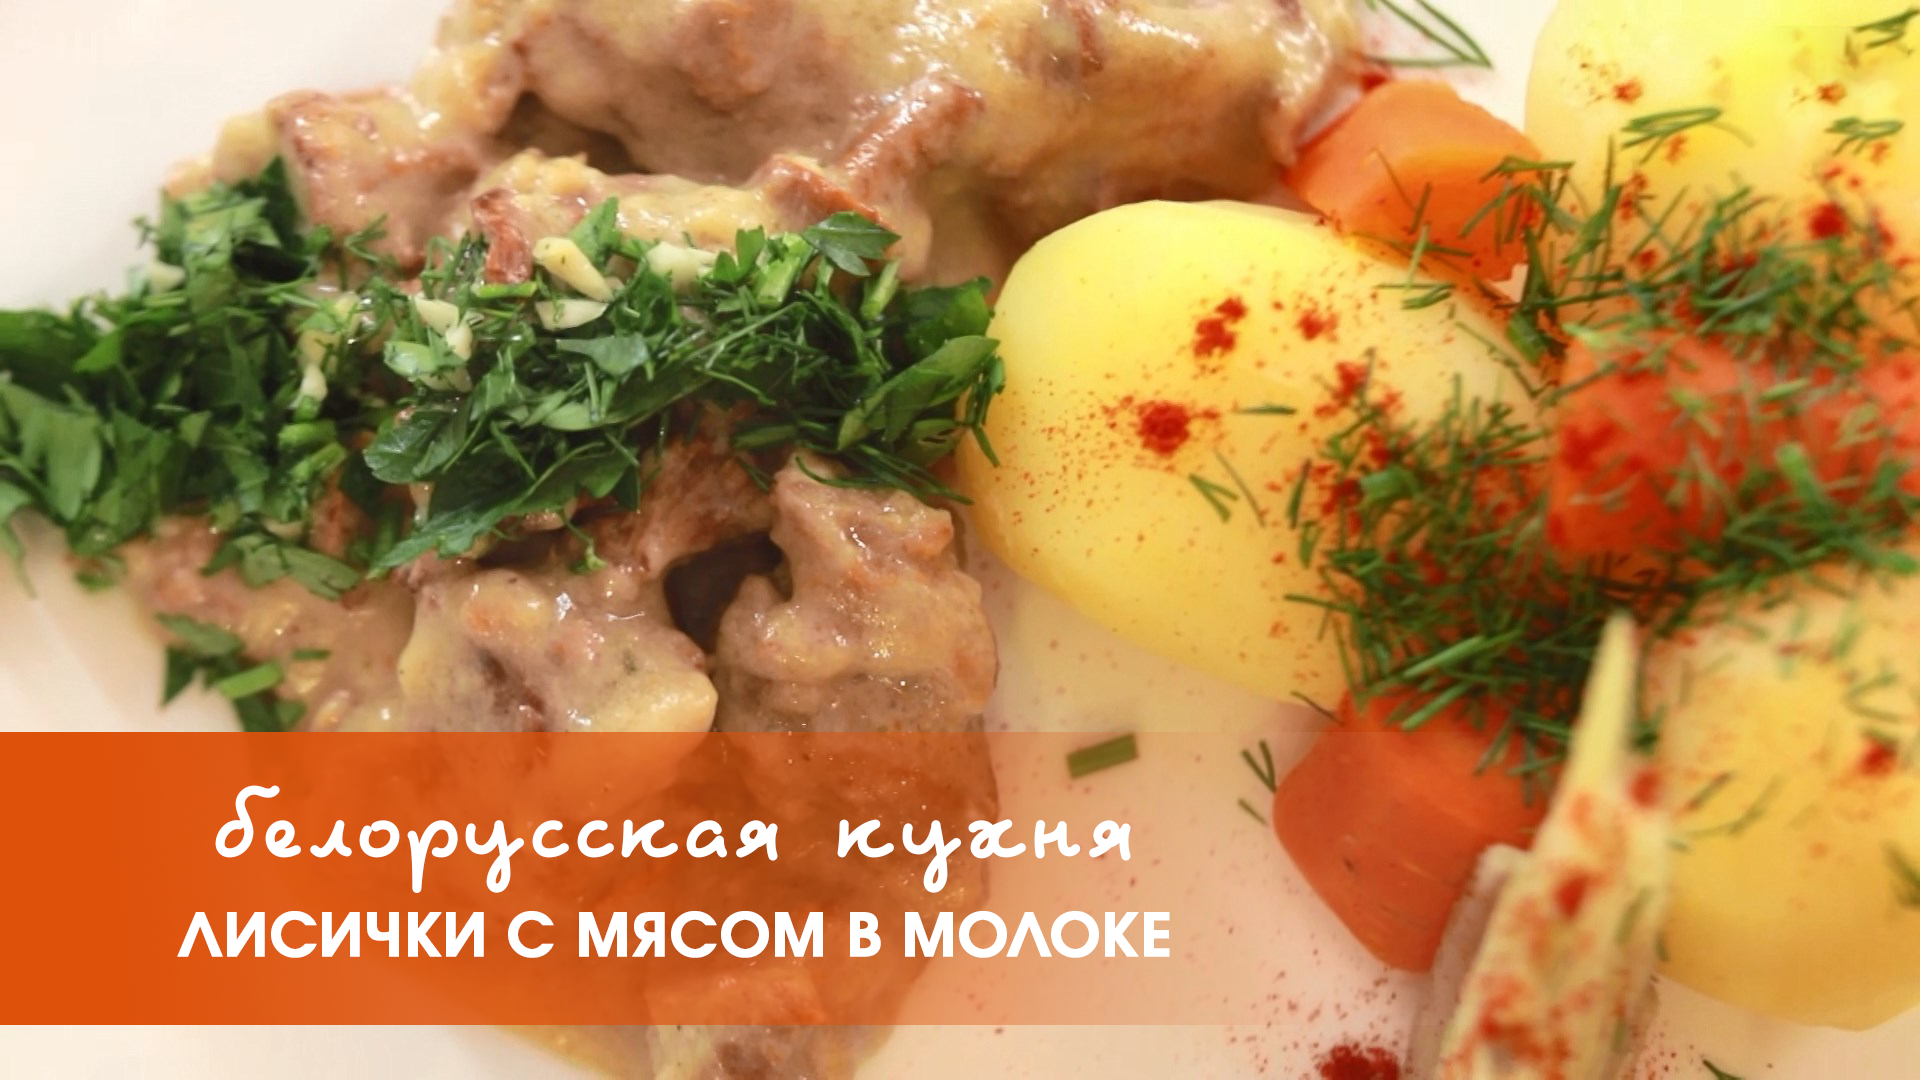 Белорусская кухня: мясо с лисичками в молоке